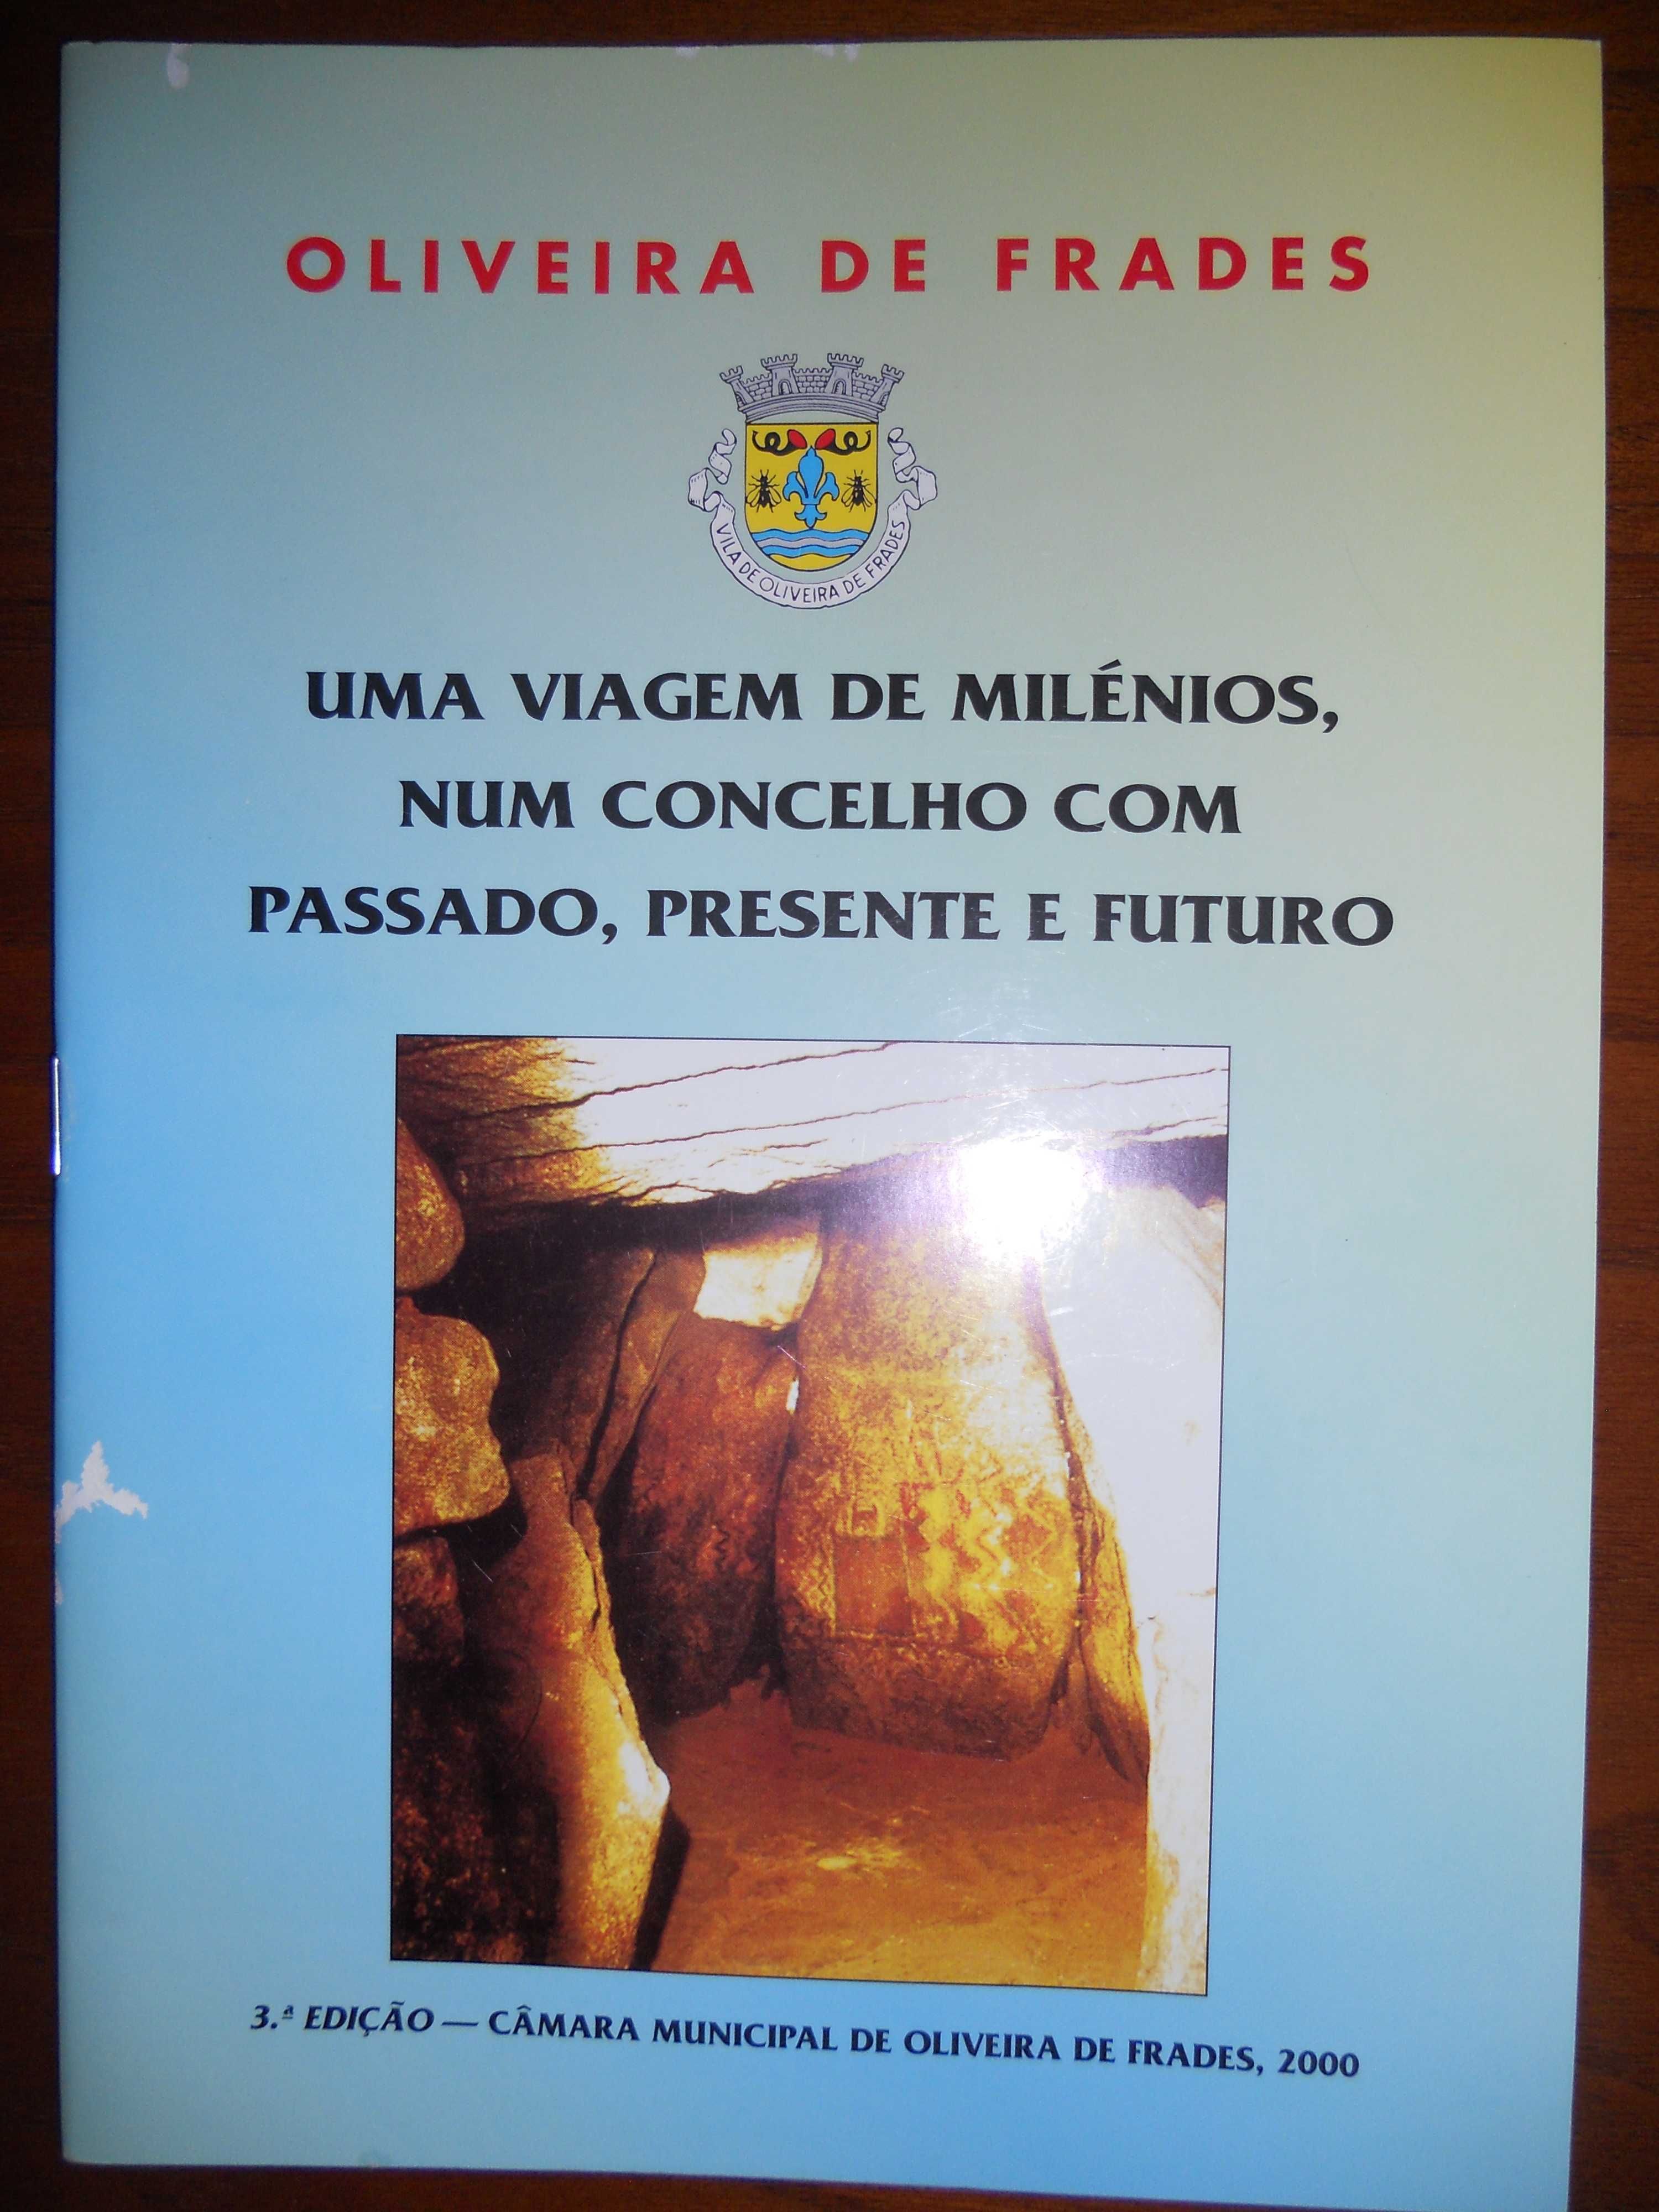 Livro sobre Oliveira de Frades